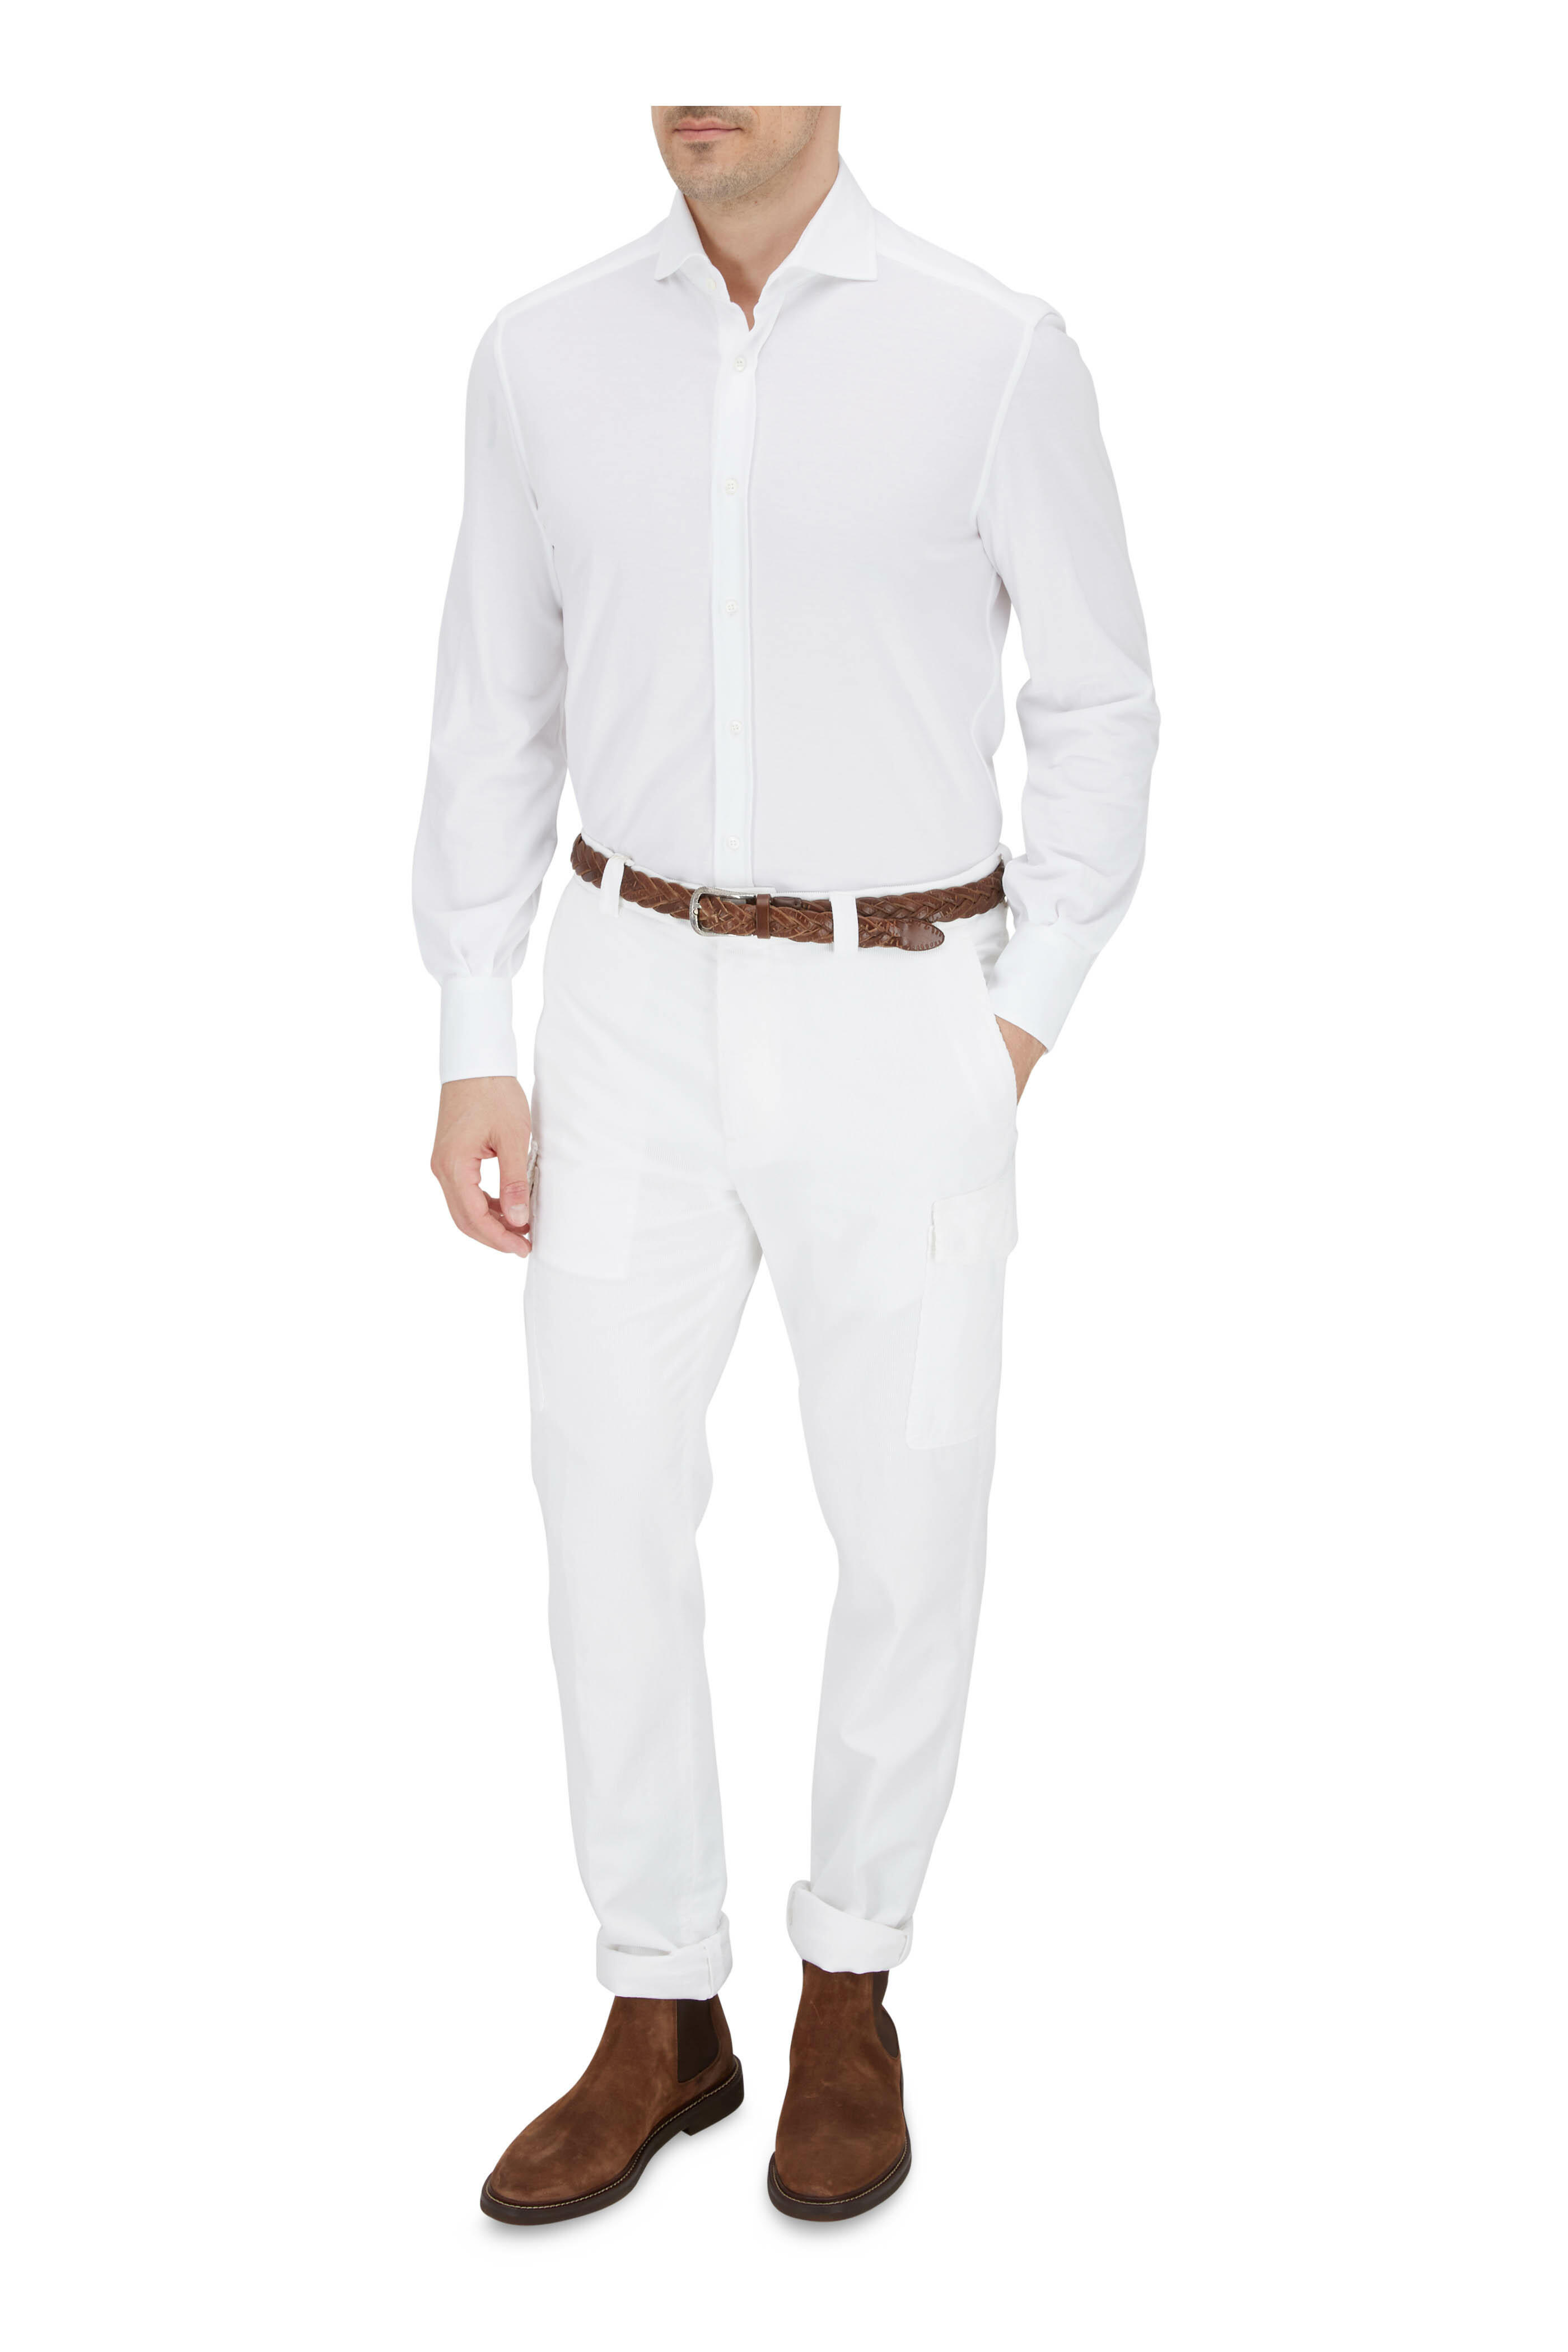 Brunello Cucinelli - White Jersey Cotton Knit Sport Shirt